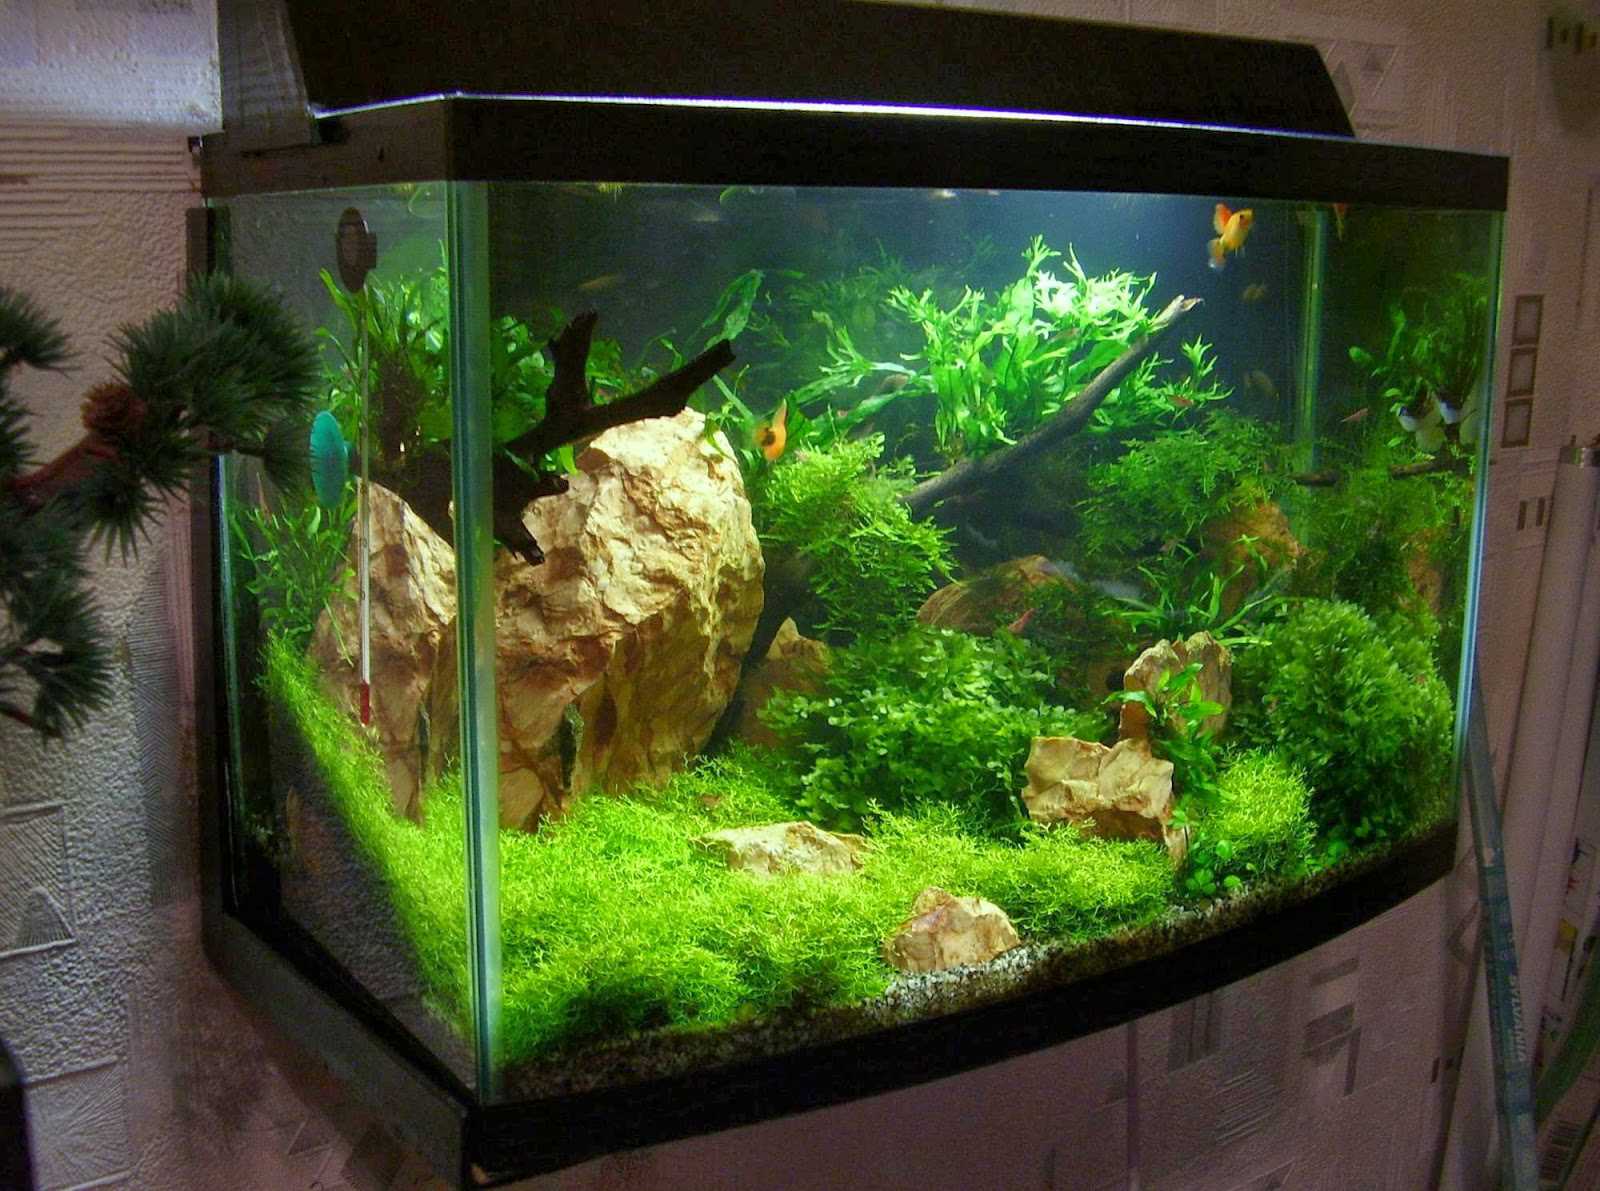 Як оформити акваріум на 300 літрів. Як створити оригінальний дизайн акваріума? обладнання та матеріали